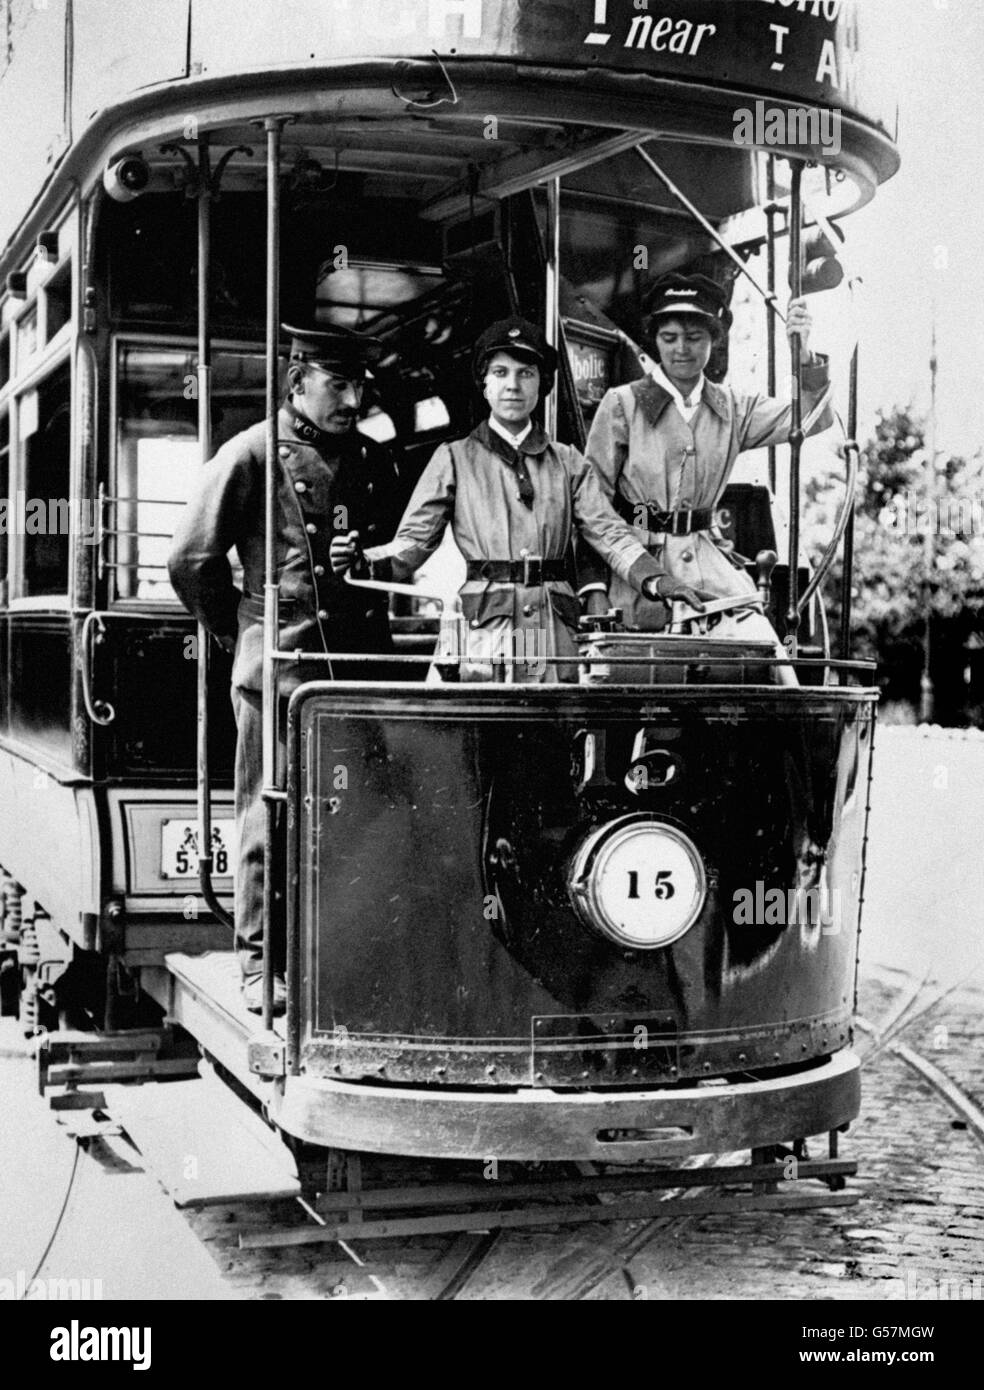 Frauen lernen, Walthamstow Council Straßenbahnen in London während des Ersten Weltkriegs zu fahren. Frauen füllten die Posten der Männer, die in den Dienst der britischen Streitkräfte gingen. Stockfoto